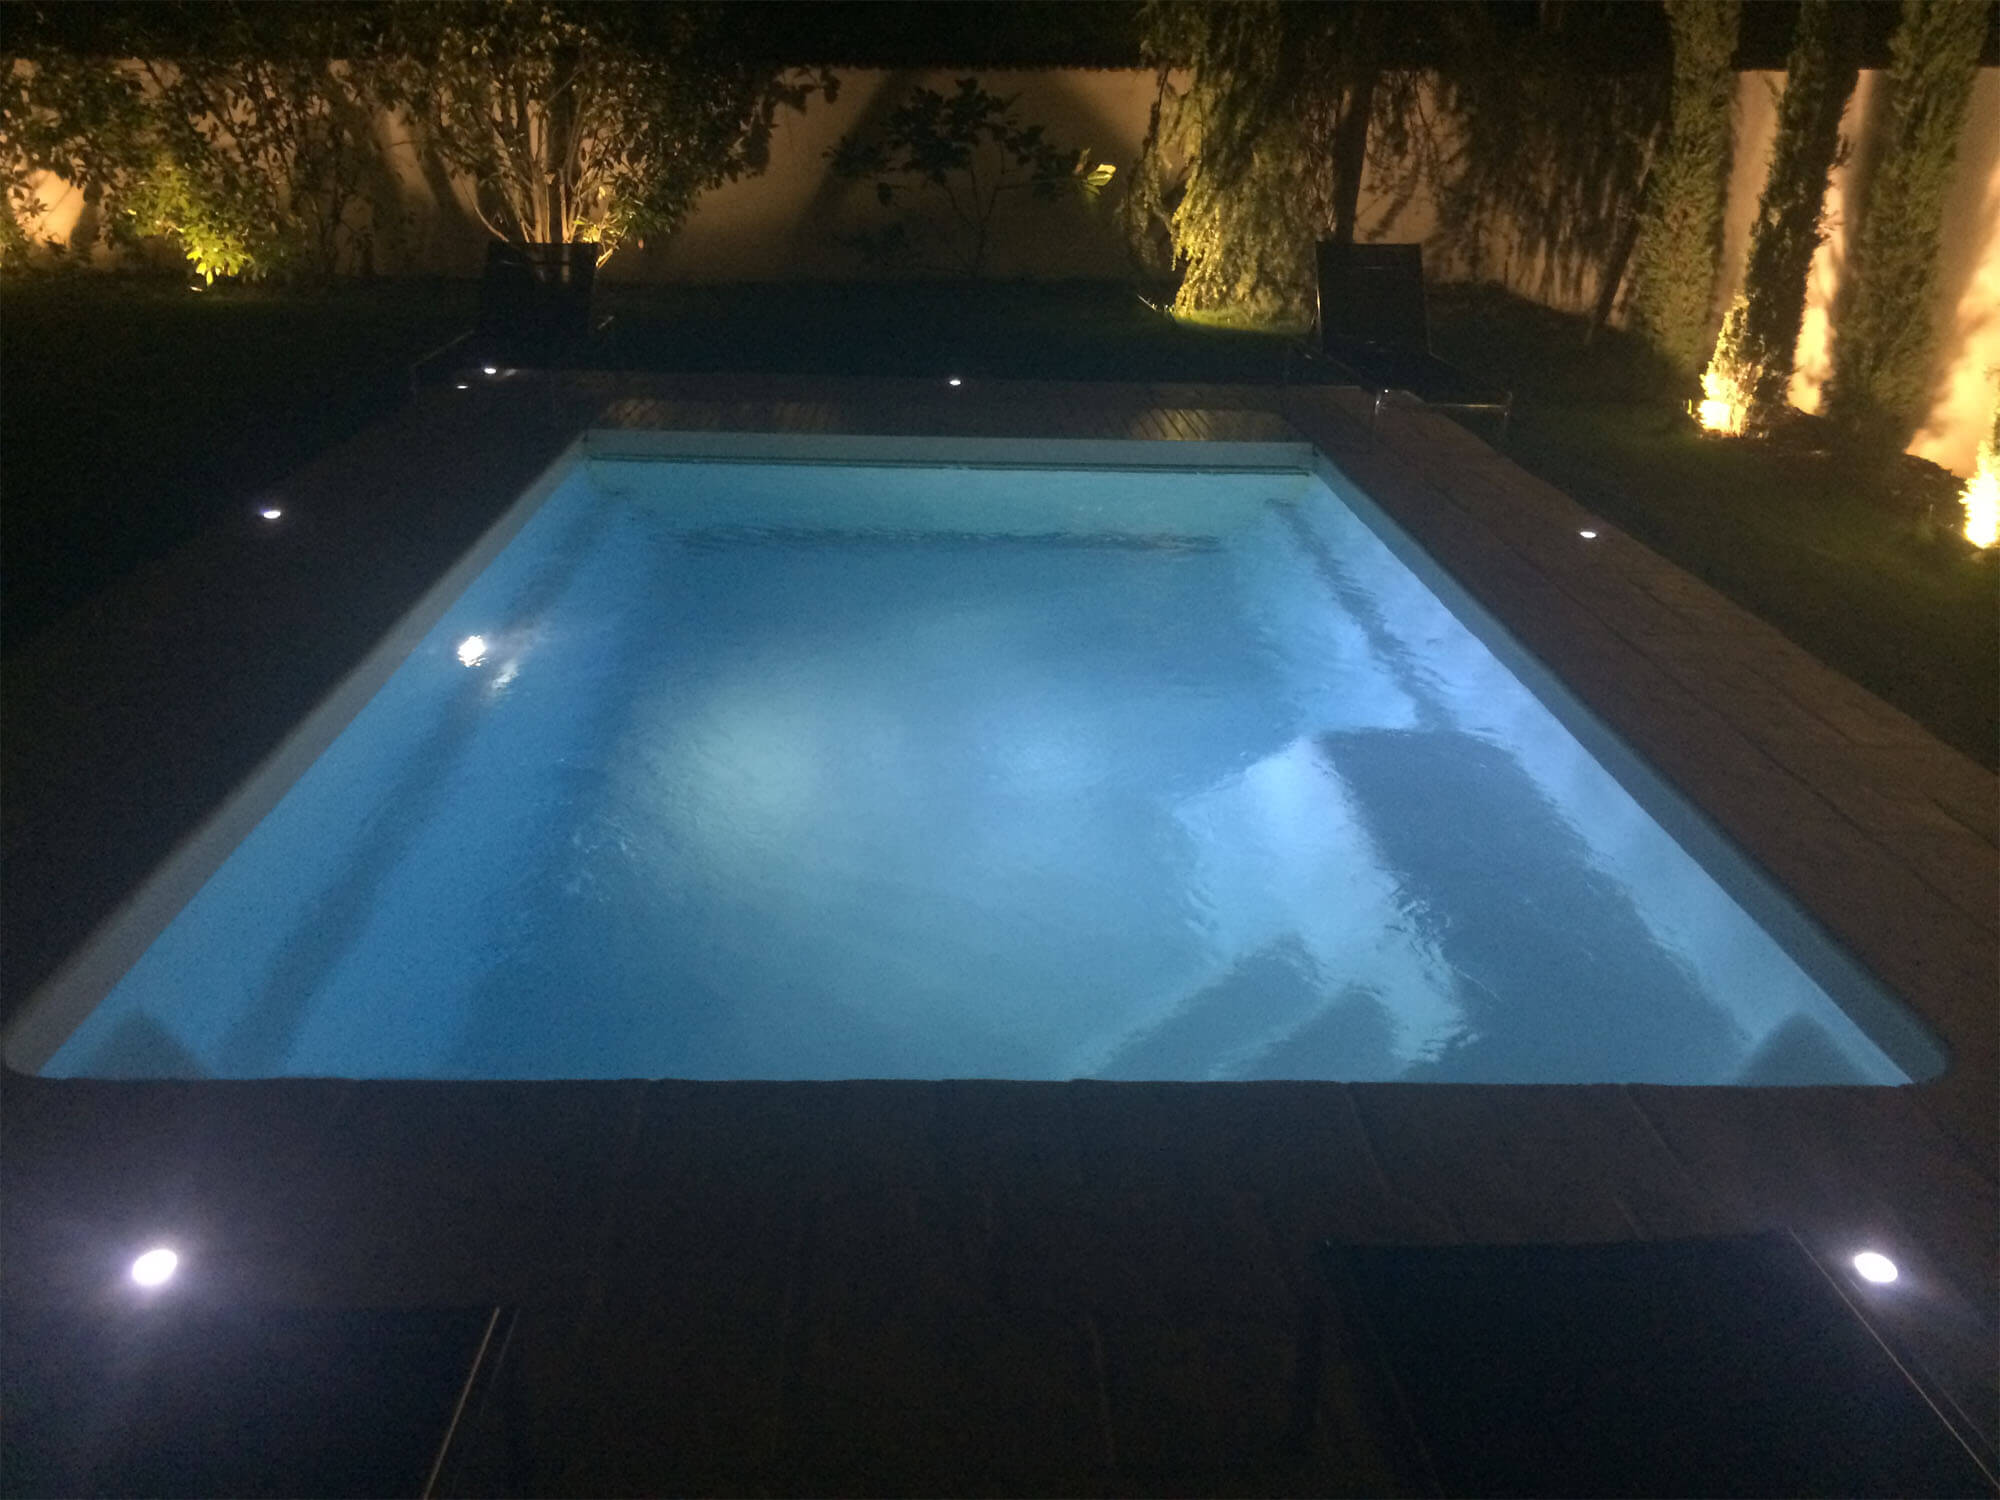 https://bella-piscines.fr/wp-content/uploads/2019/04/lumiere-piscine-led.jpg